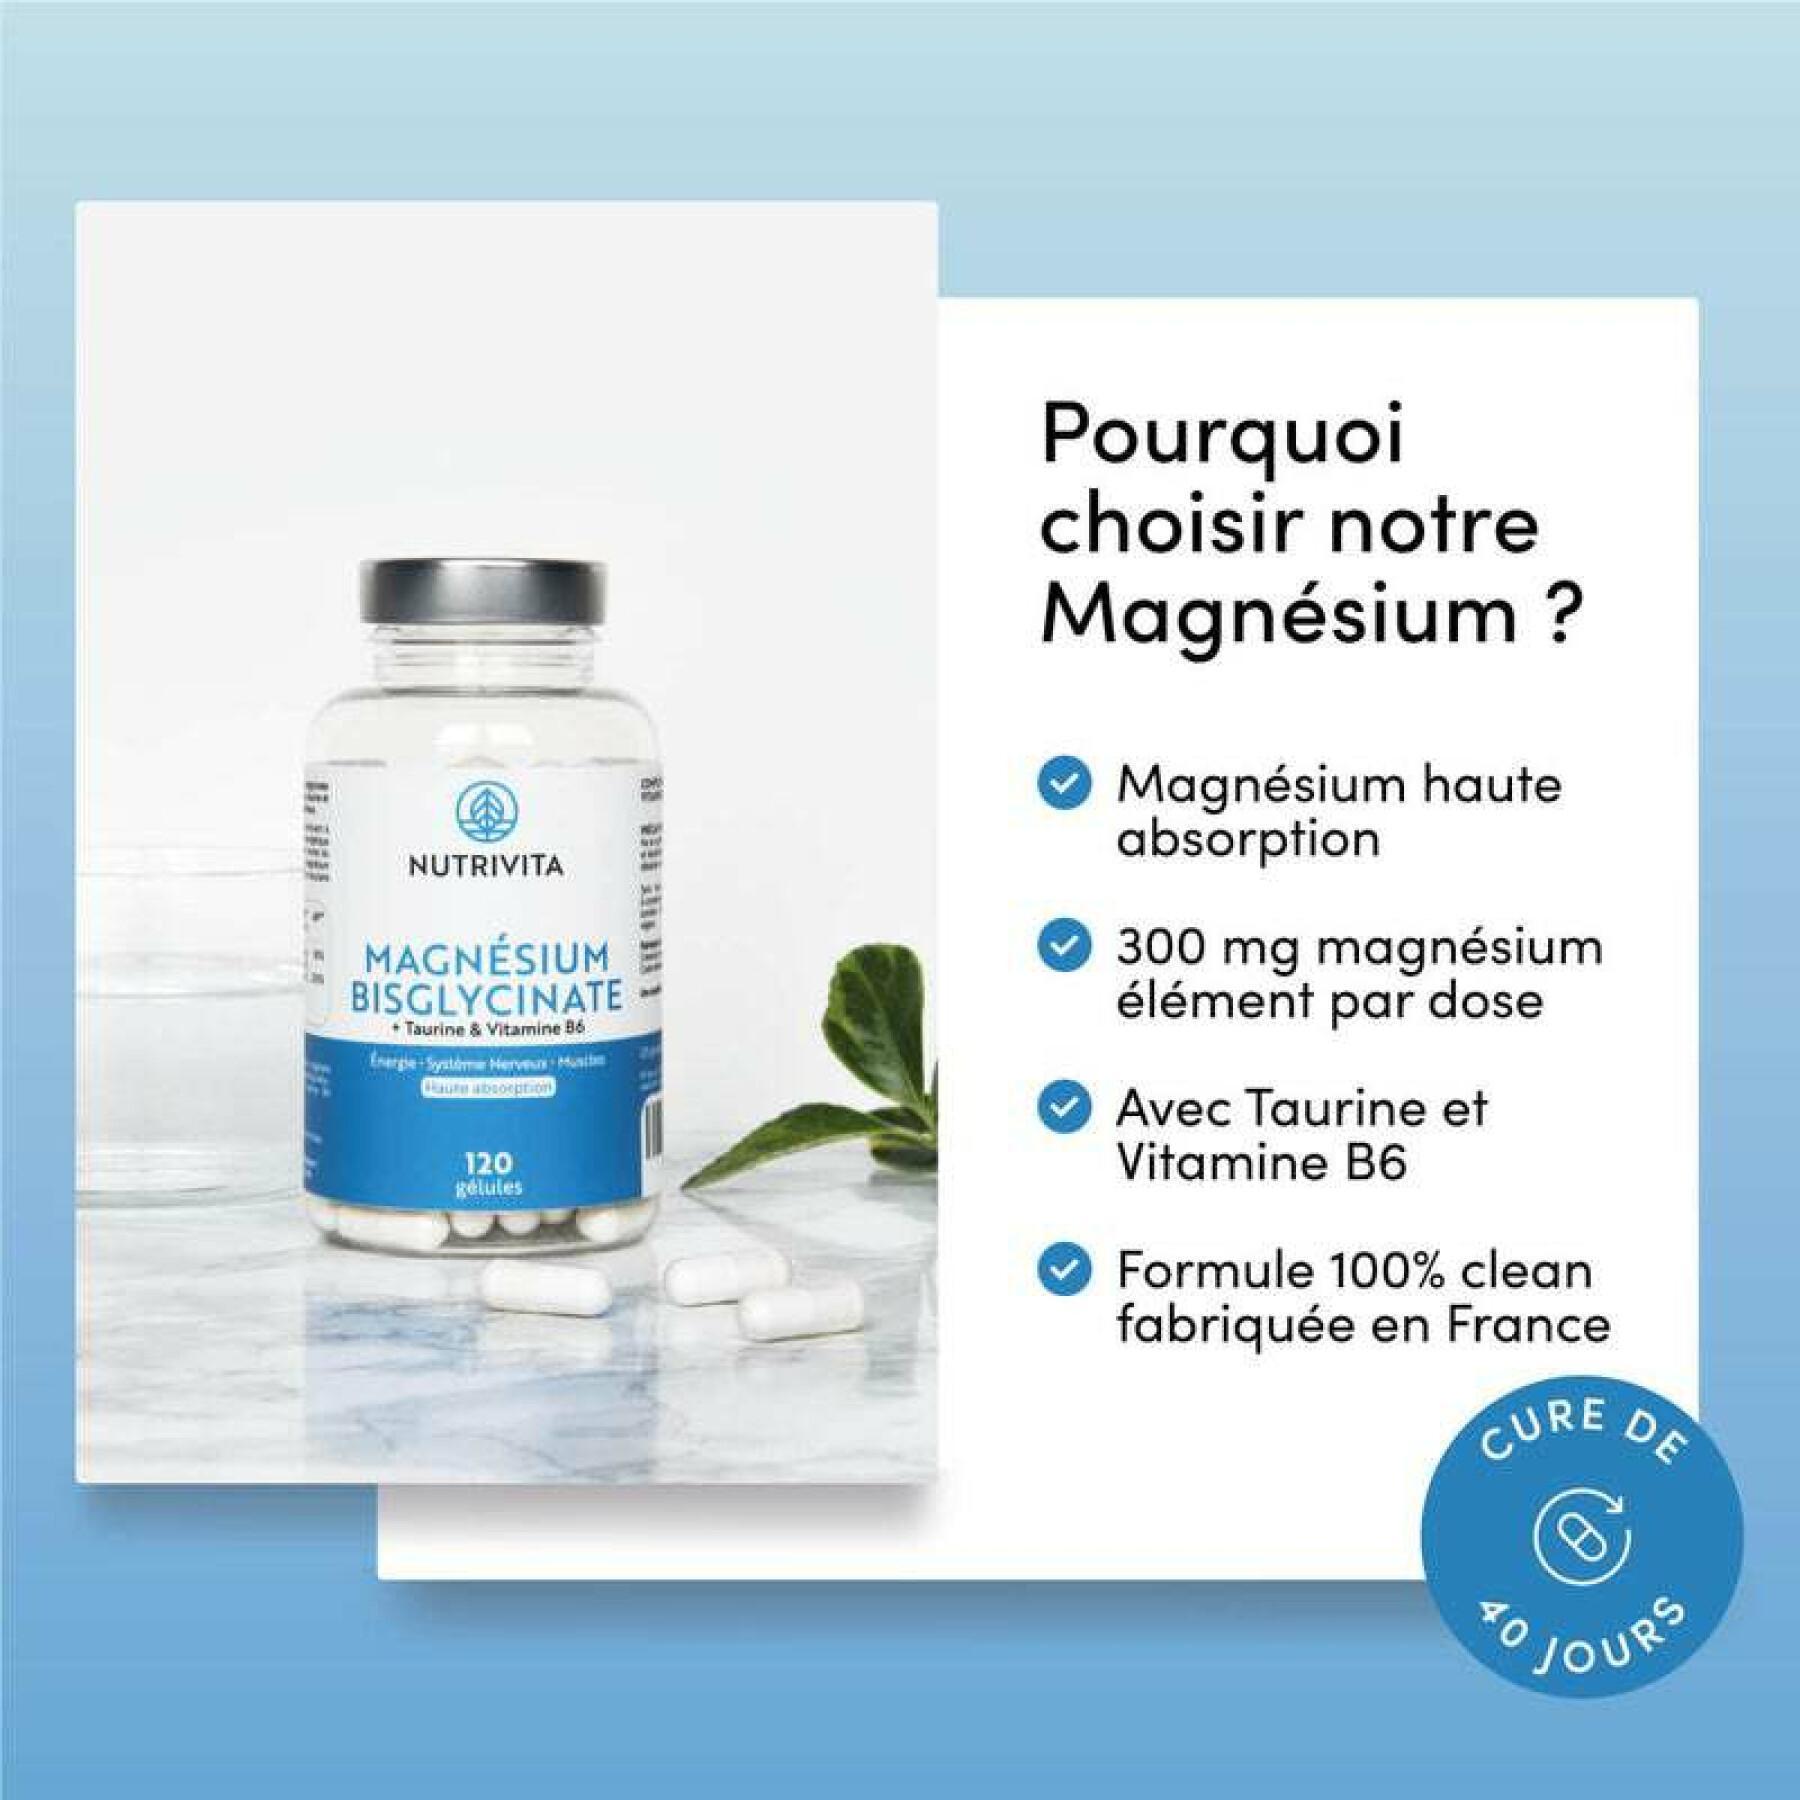 Kosttillskott magnesiumbisglycinat - 120 kapslar Nutrivita